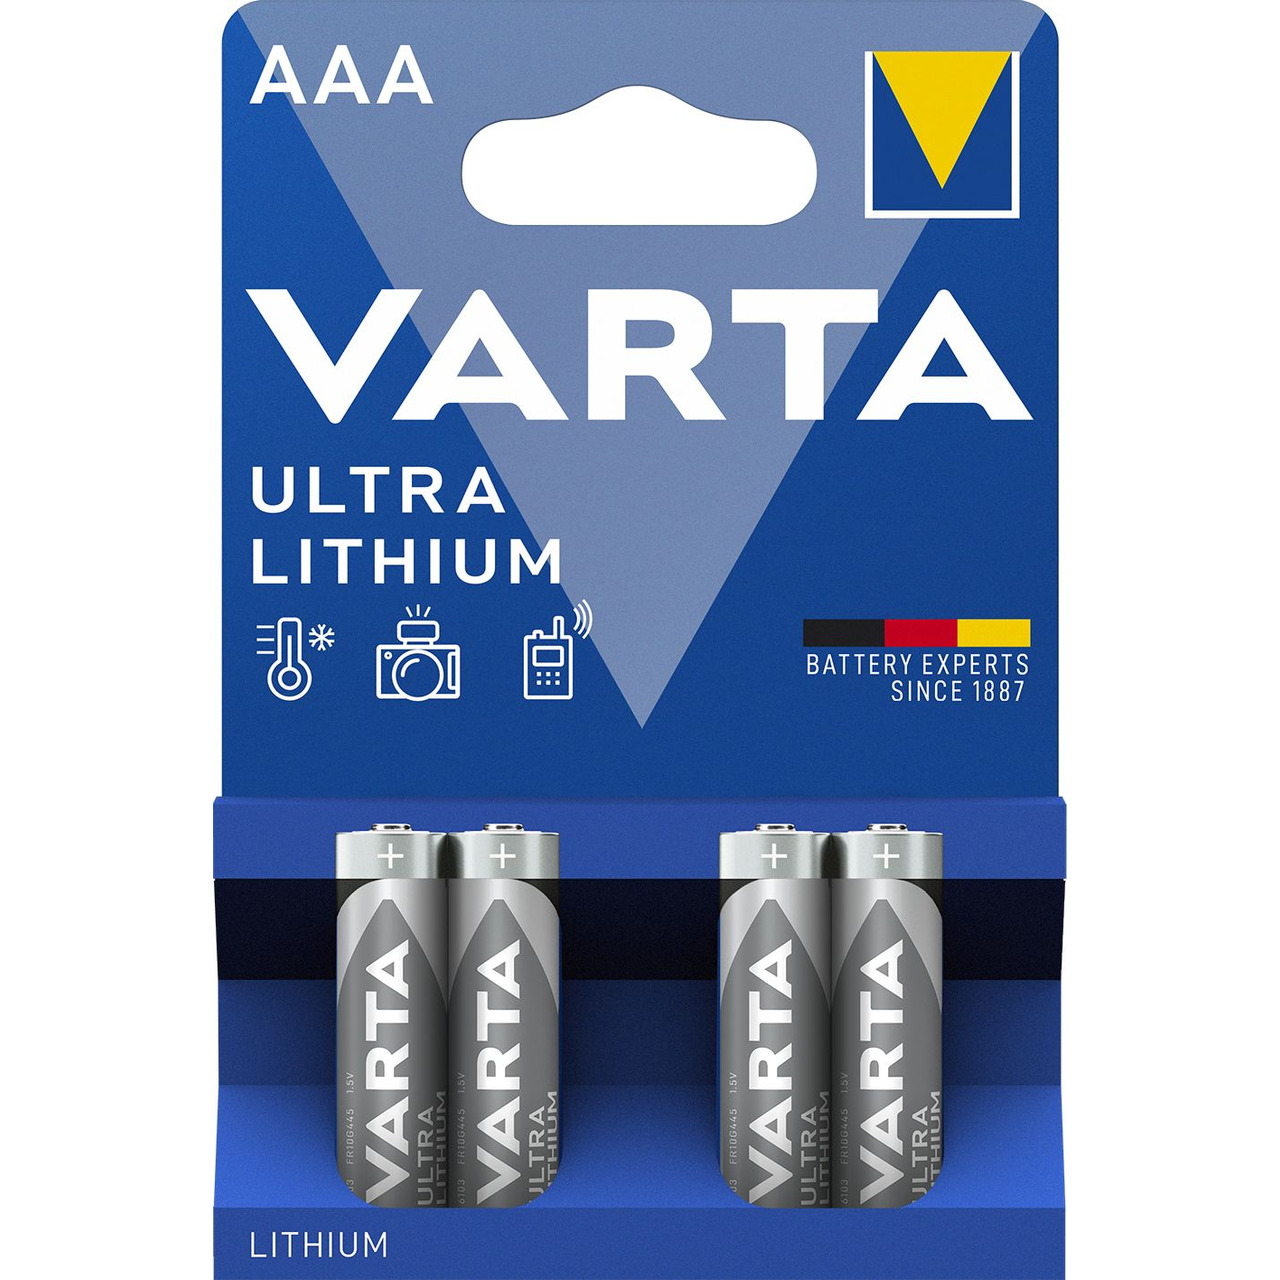 VARTA ULTRA LITHIUM AAA Blister 4